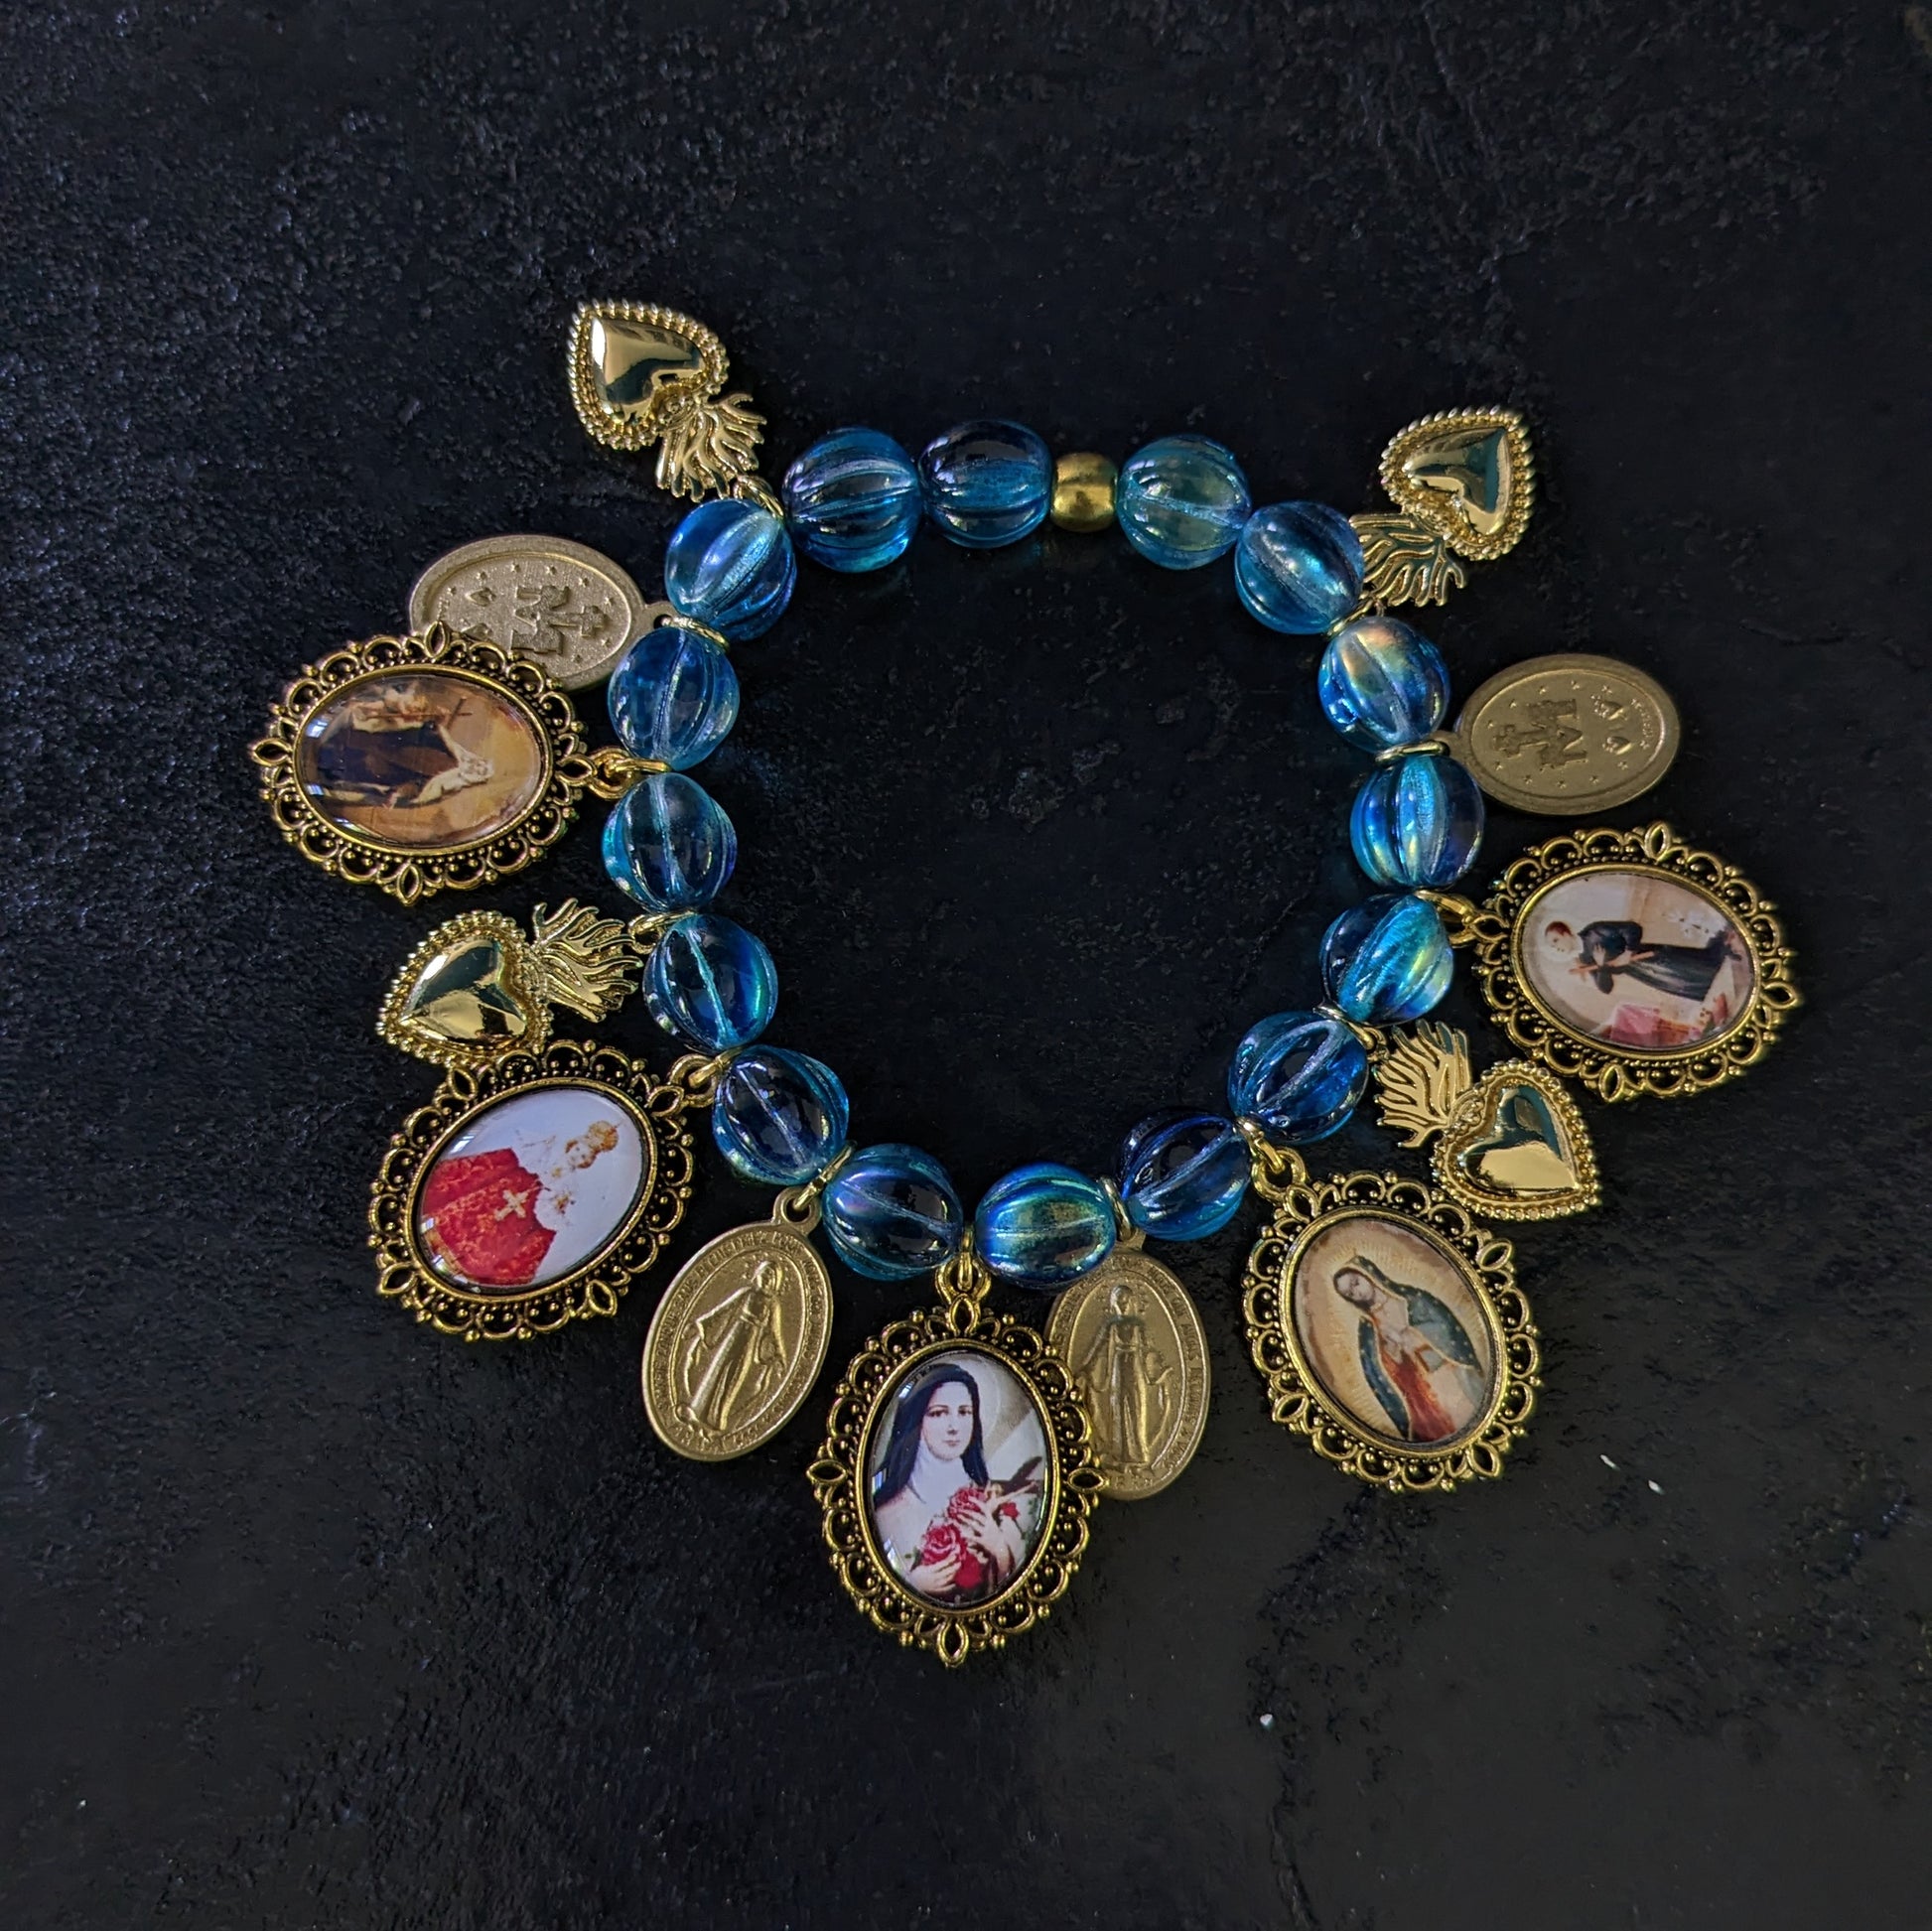 Fait à la main, ce bracelet élégant est orné de médailles catholiques richement détaillées et colorées, et ponctué de médailles miraculeuses.